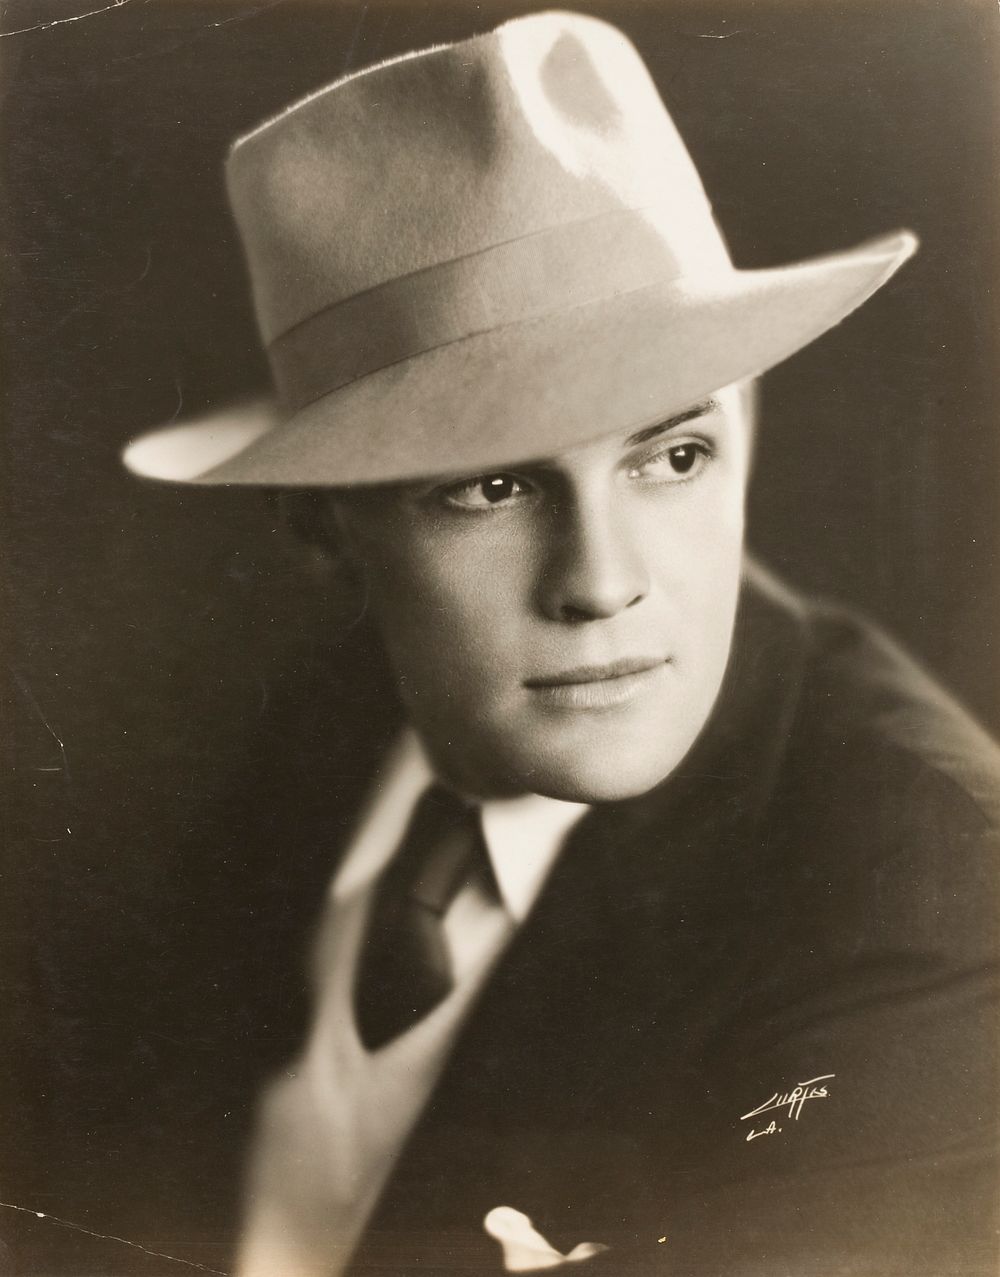 Hollywood Portrait by Edward Sheriff Curtis